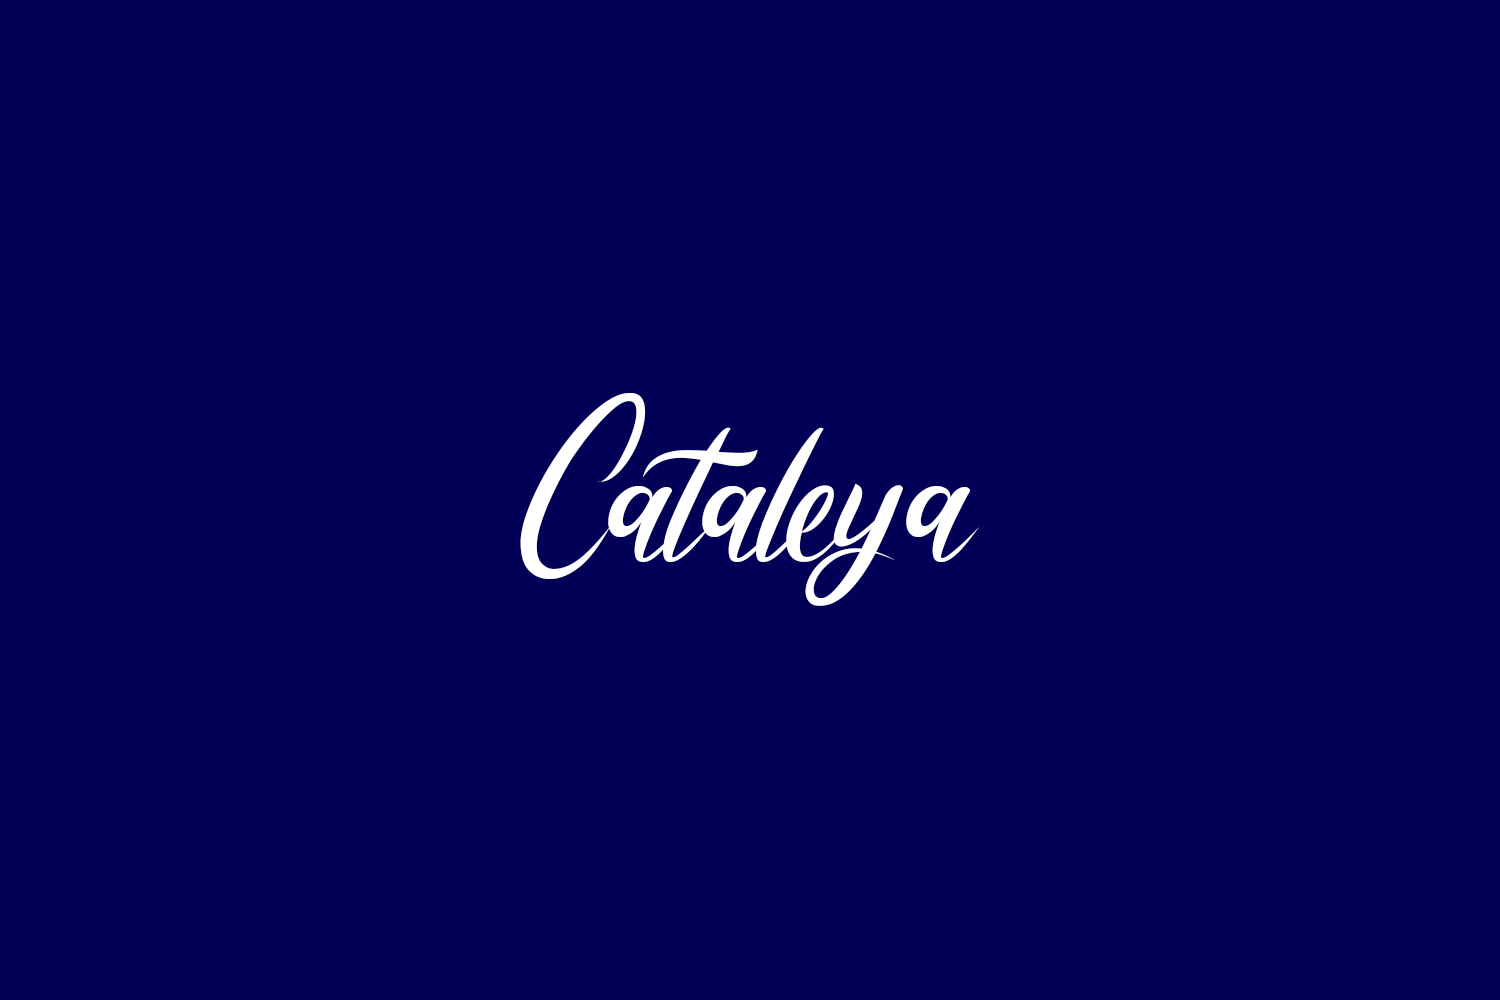 Cataleya Free Font